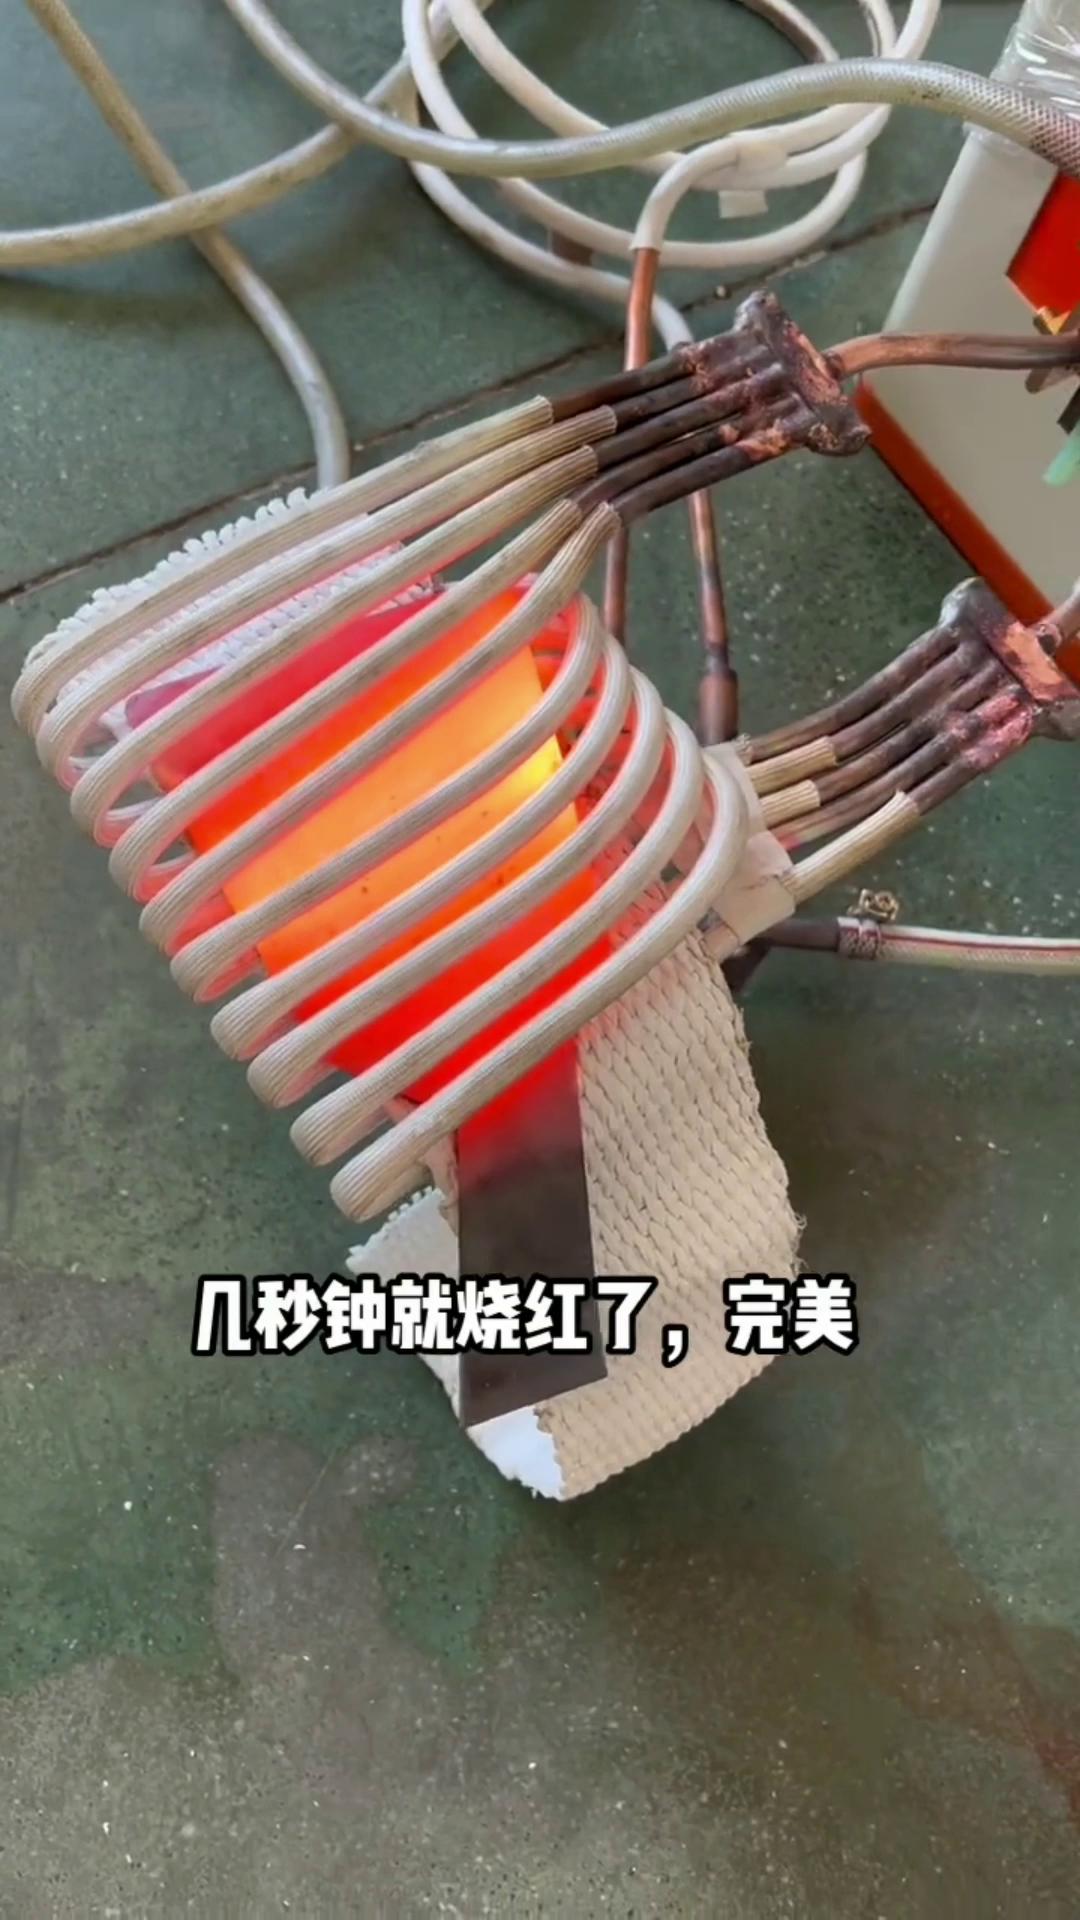 铁板加热几秒就烧红了-打铁用中频感应加热设备就是爽快